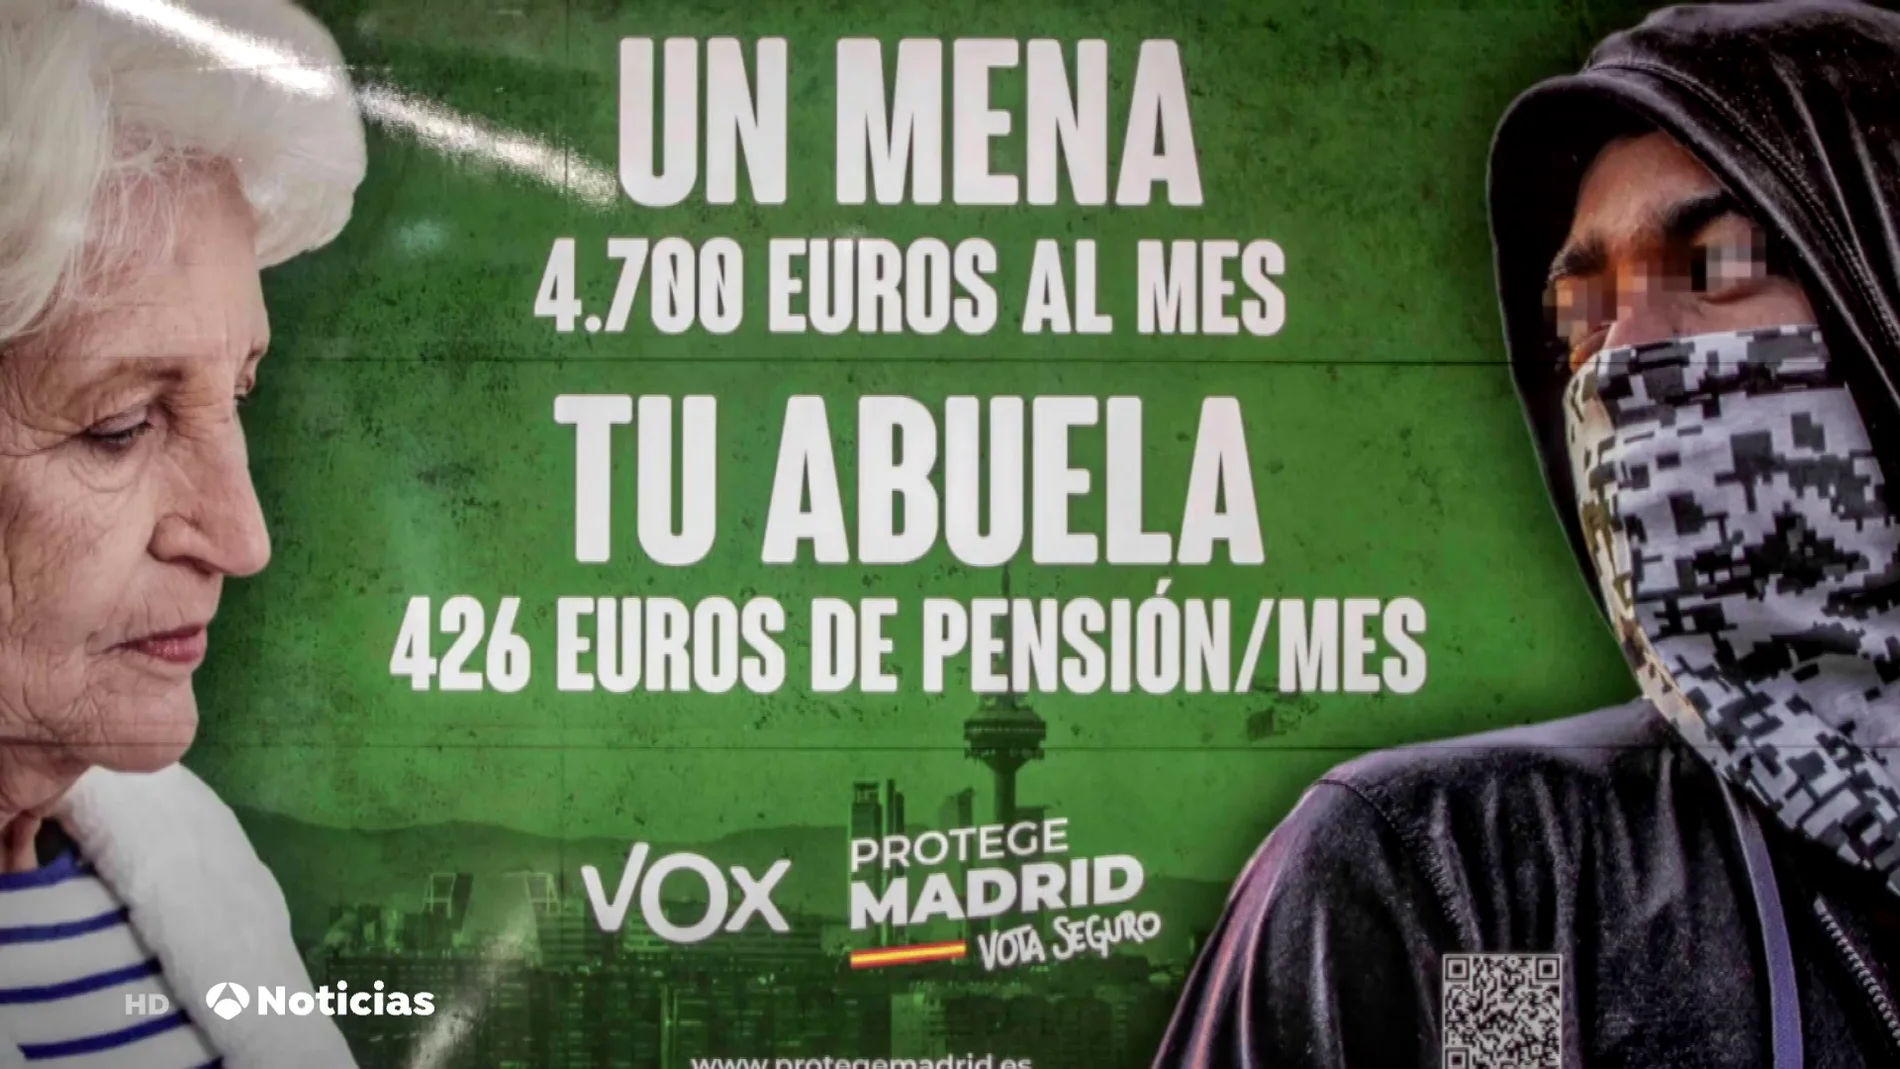 La Fiscalía de Madrid investigará a Vox por posible delito de odio en un cartel para las elecciones de Madrid